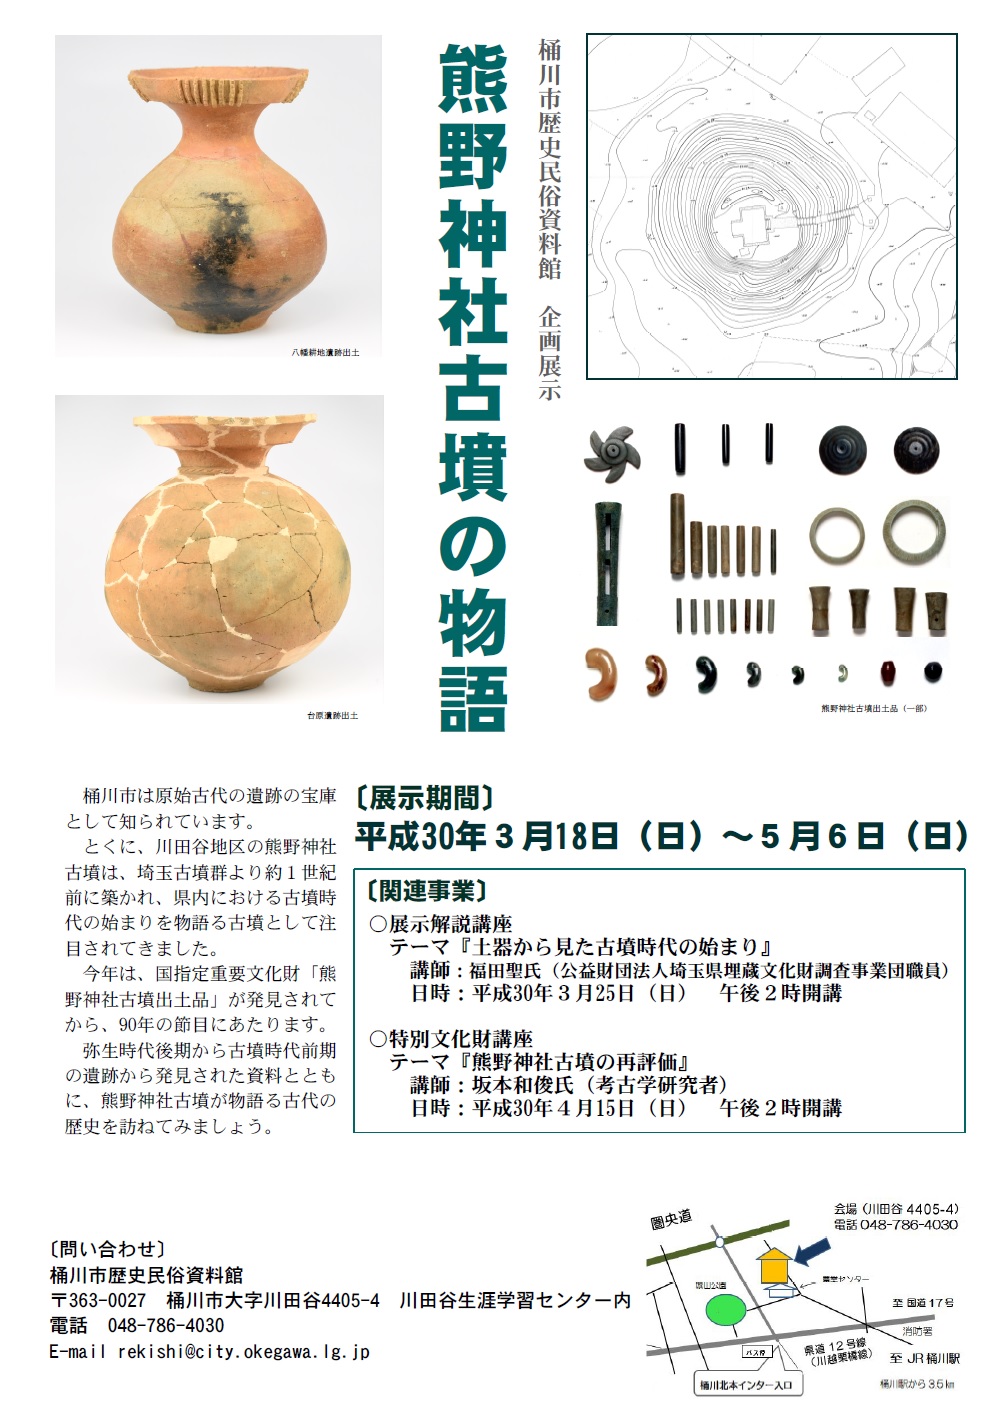 熊野神社古墳の物語 桶川市歴史民俗資料館 企画展示チラシの画像、詳細は前後に記載。